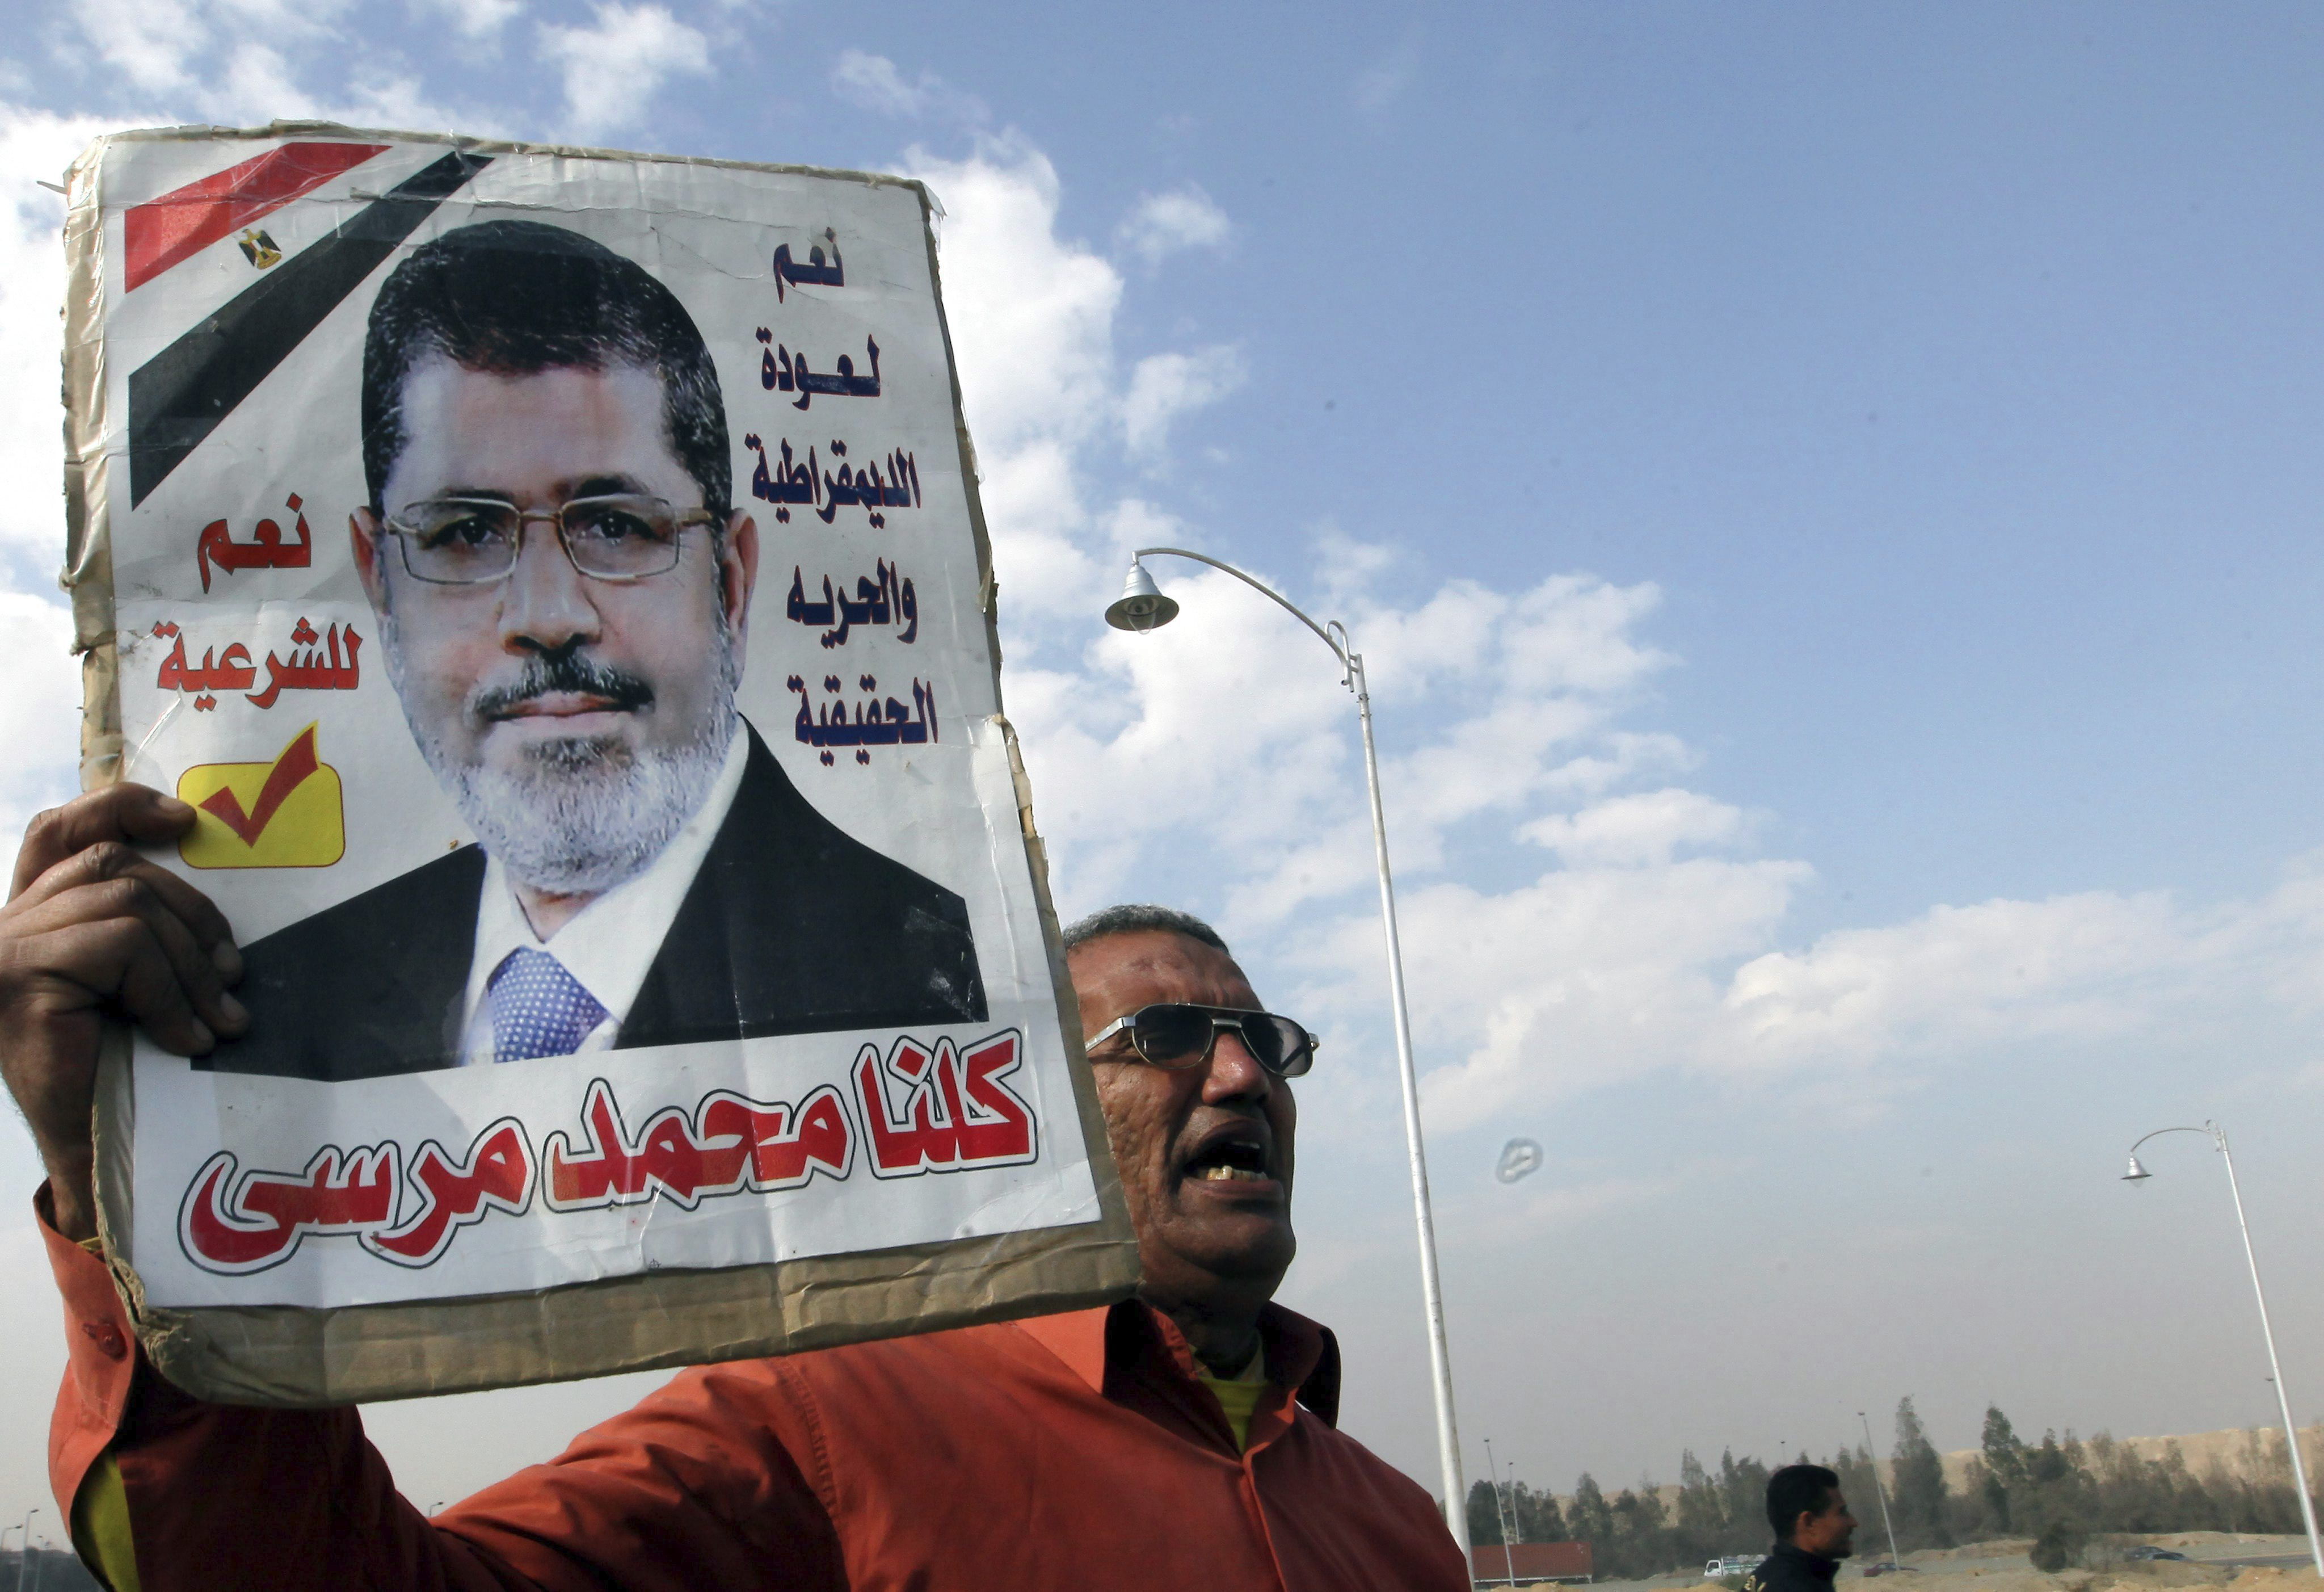 La inestabilidad en Egipto y los países vecinos dispara el narcotráfico